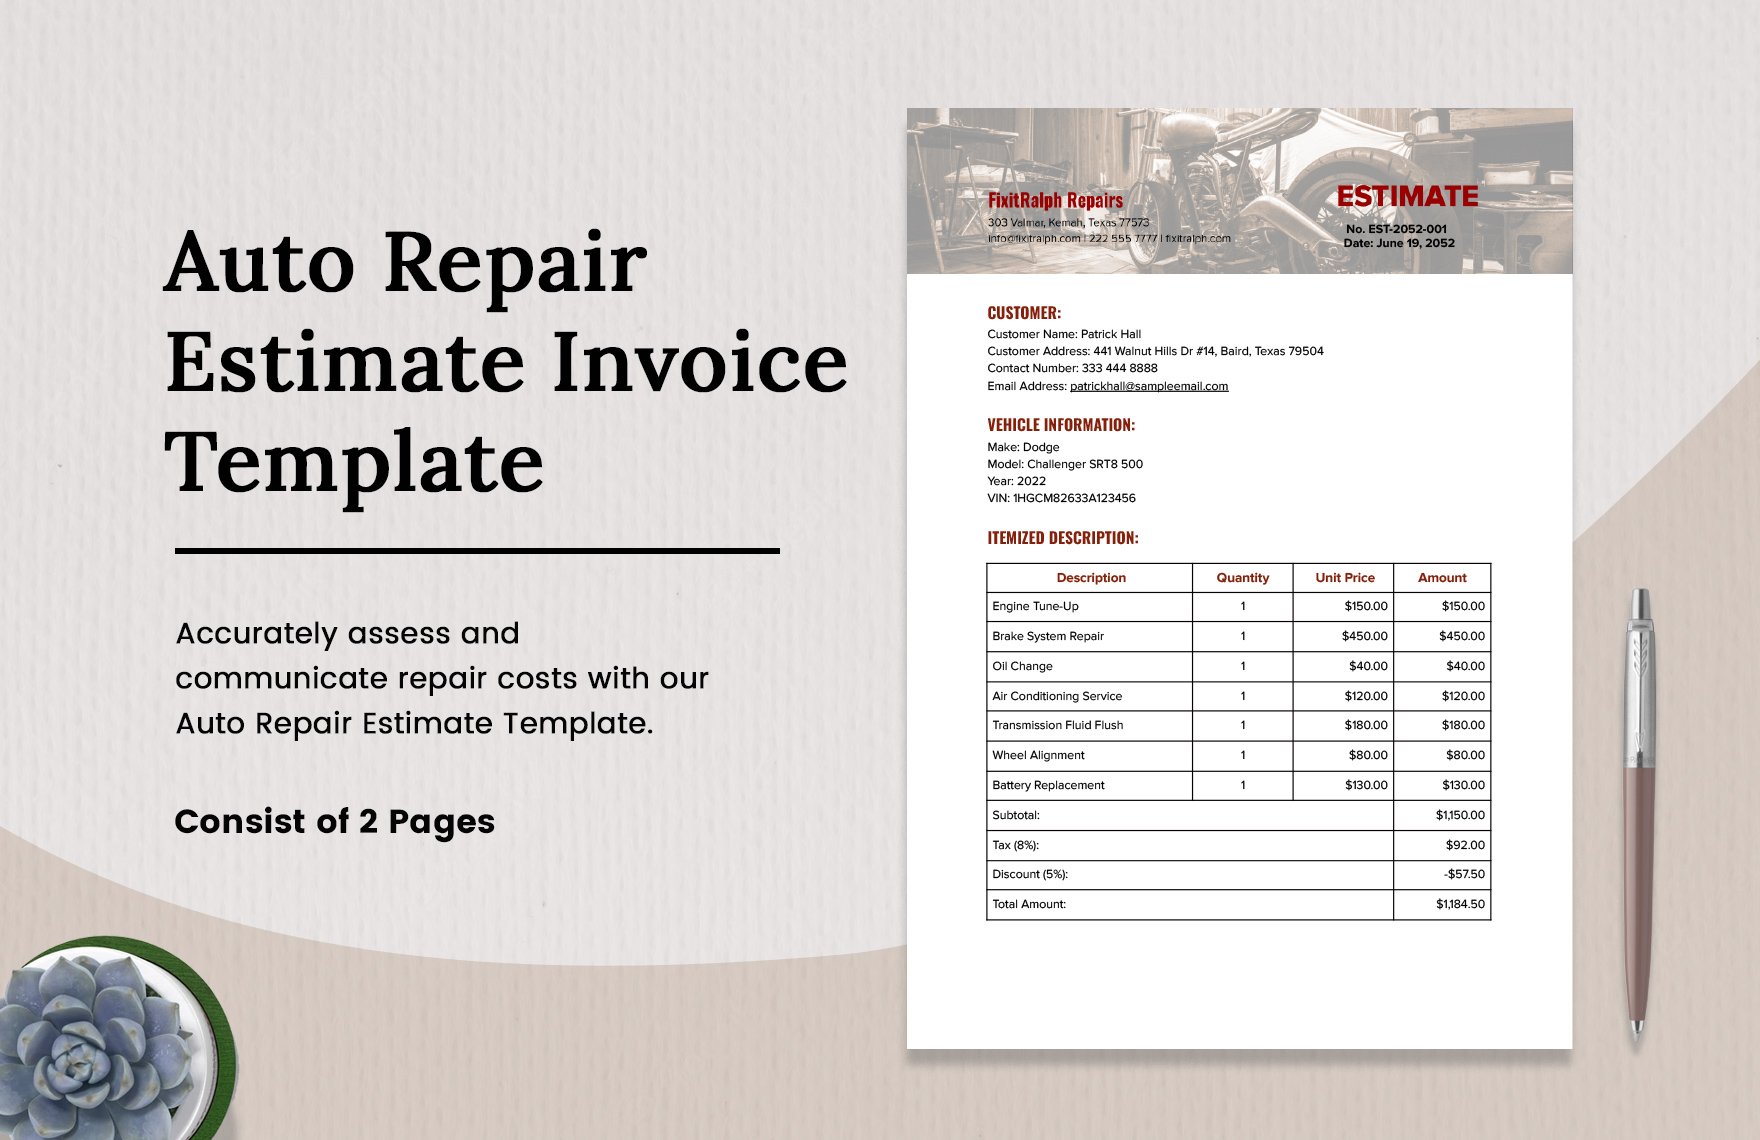 auto-repair-estimate-invoice